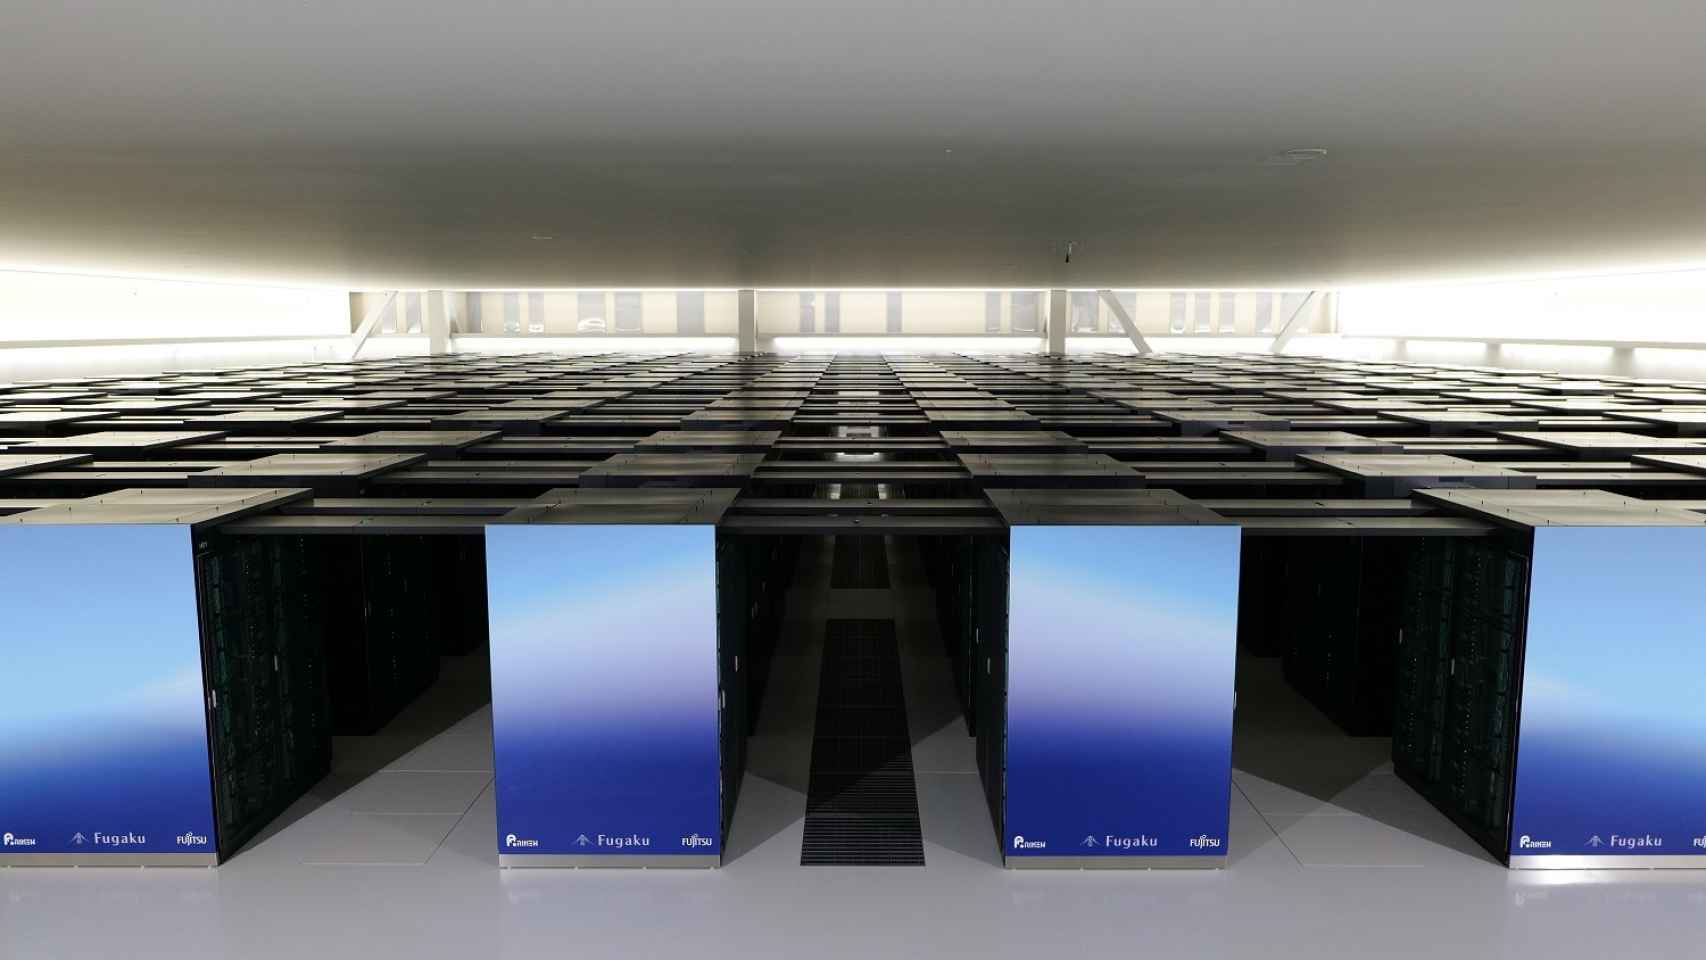 Imagen de Fugaku, el supercomputador más rápido del mundo.